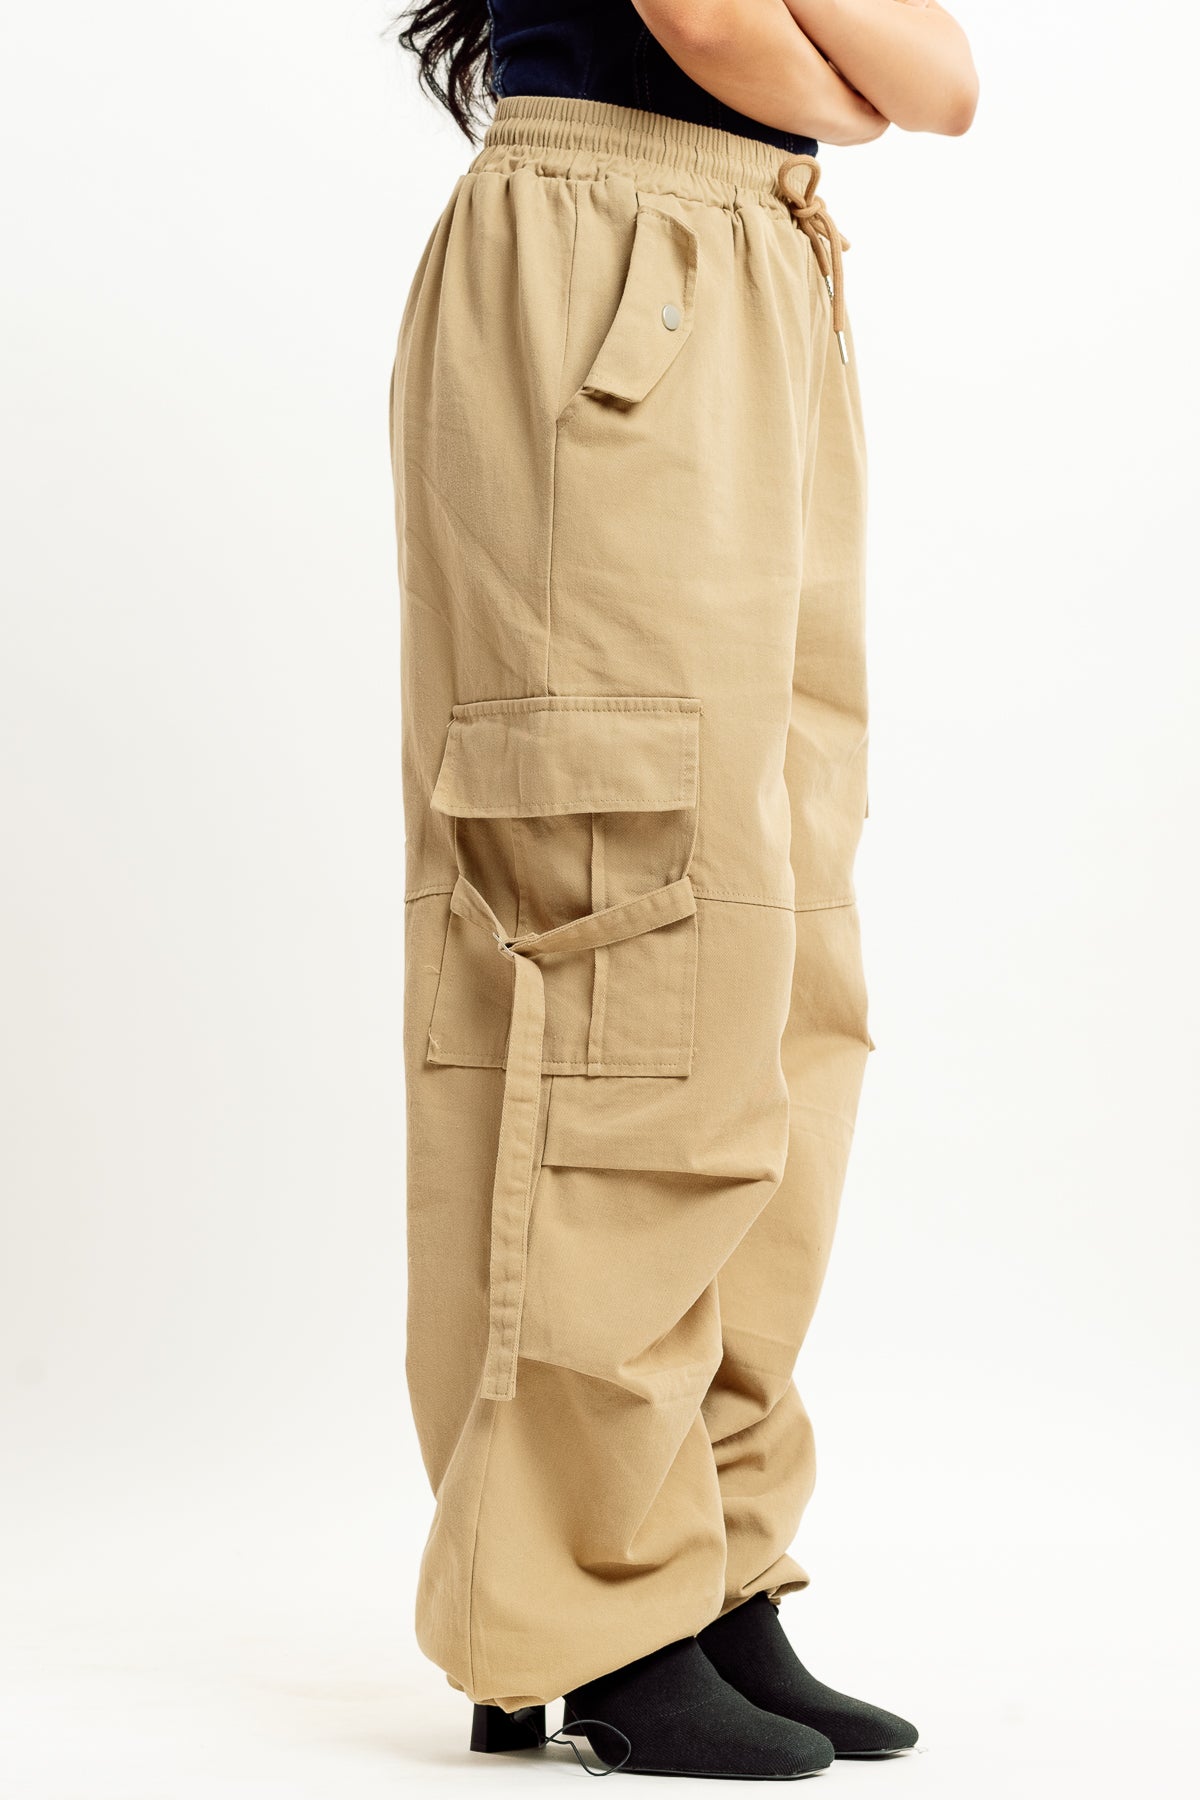 HH-Works Women's Rebecca Multi-Pocket Drawstring Pant | Khaki – Scrub Pro  Uniforms